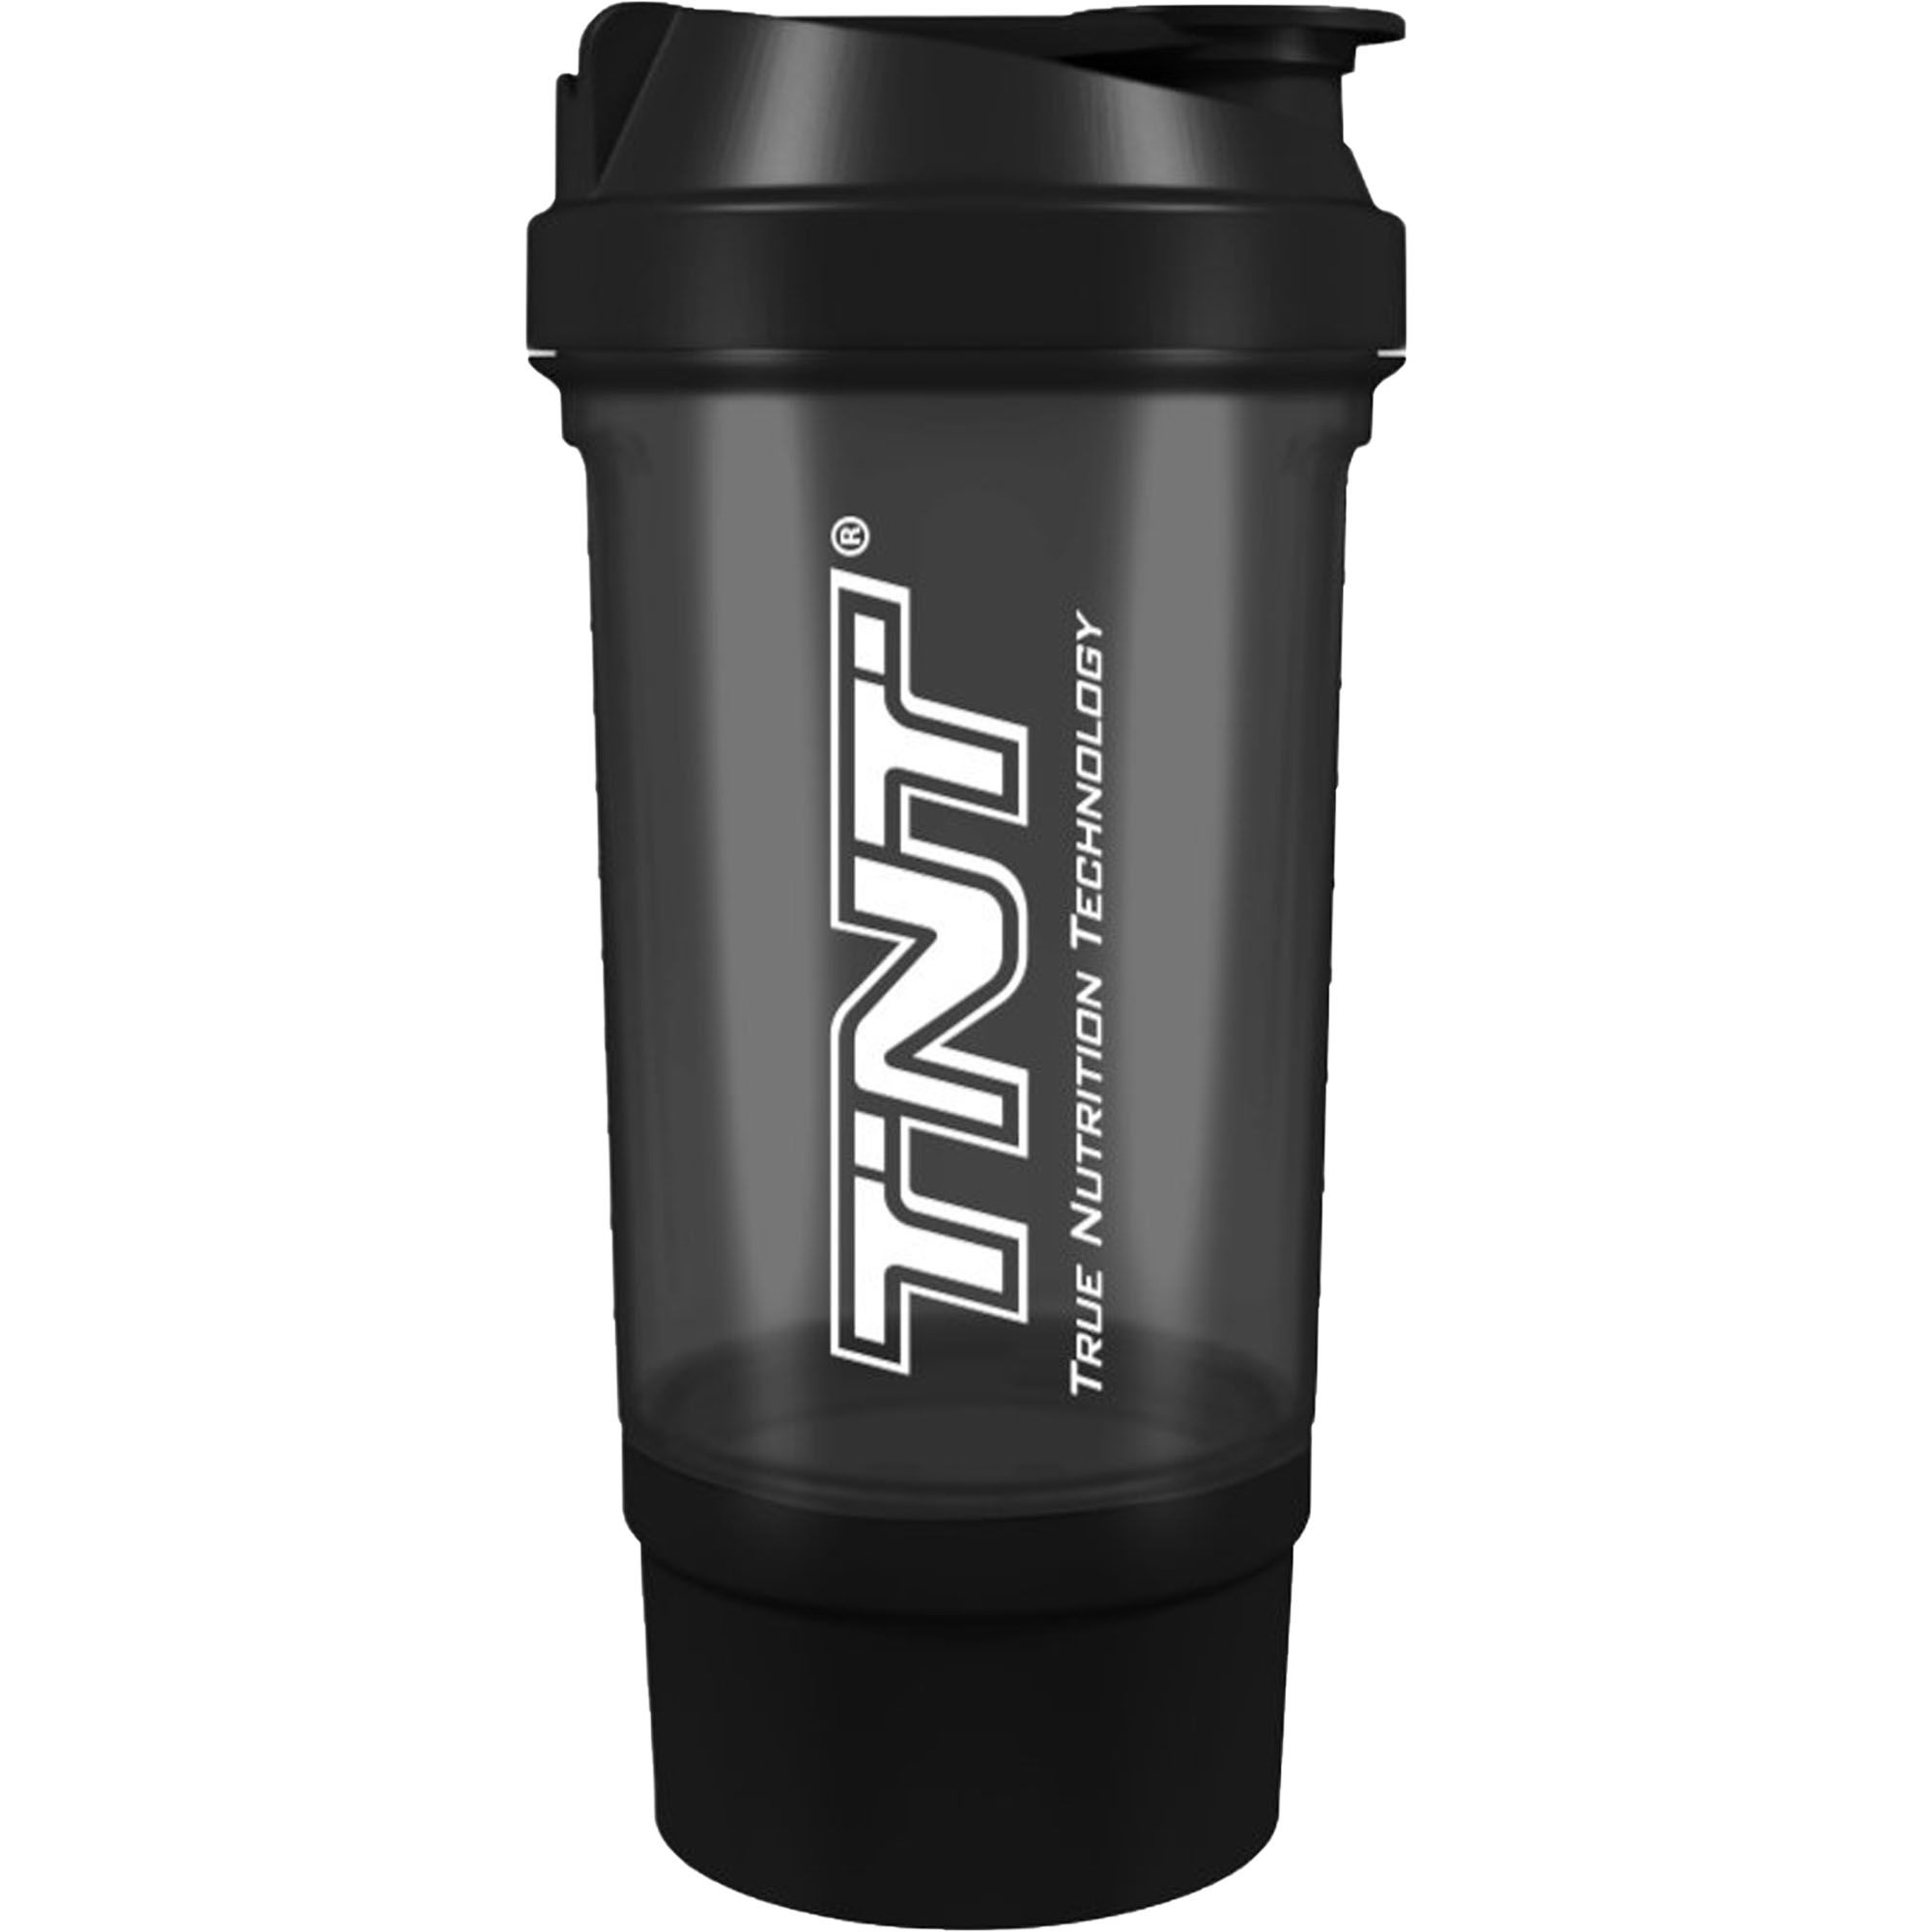 TNT Shaker für Proteinshakes und Sportnahrung